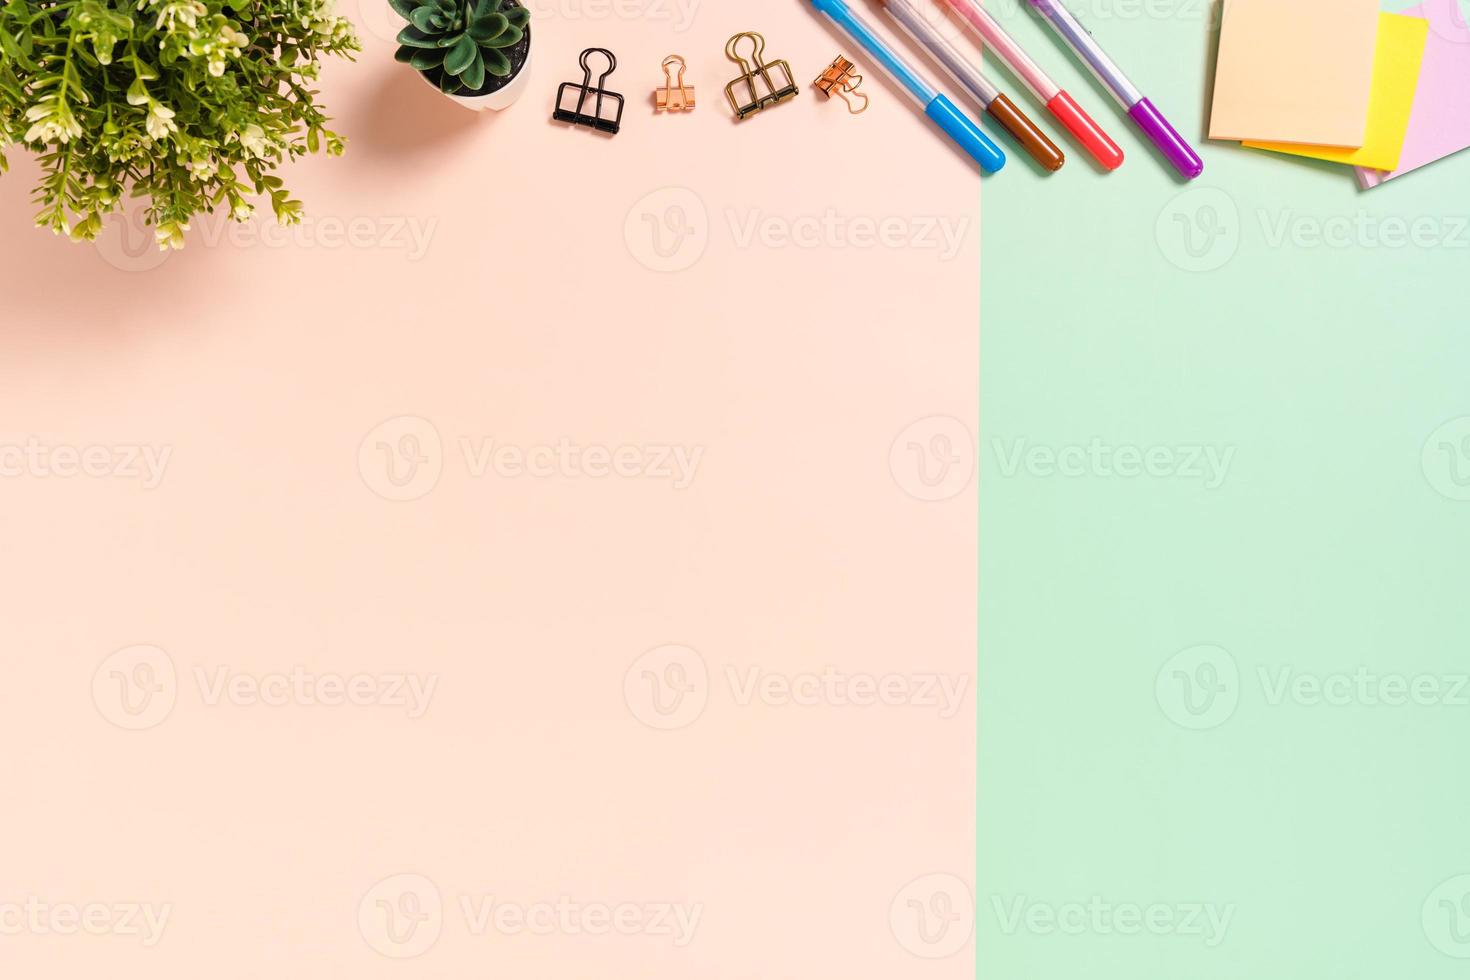 minimale werkruimte - creatieve platliggende foto van werkruimtebureau. bovenaanzicht bureau met zelfklevende notitie op pastel groen roze kleur achtergrond. bovenaanzicht met kopieerruimte, platliggende fotografie.